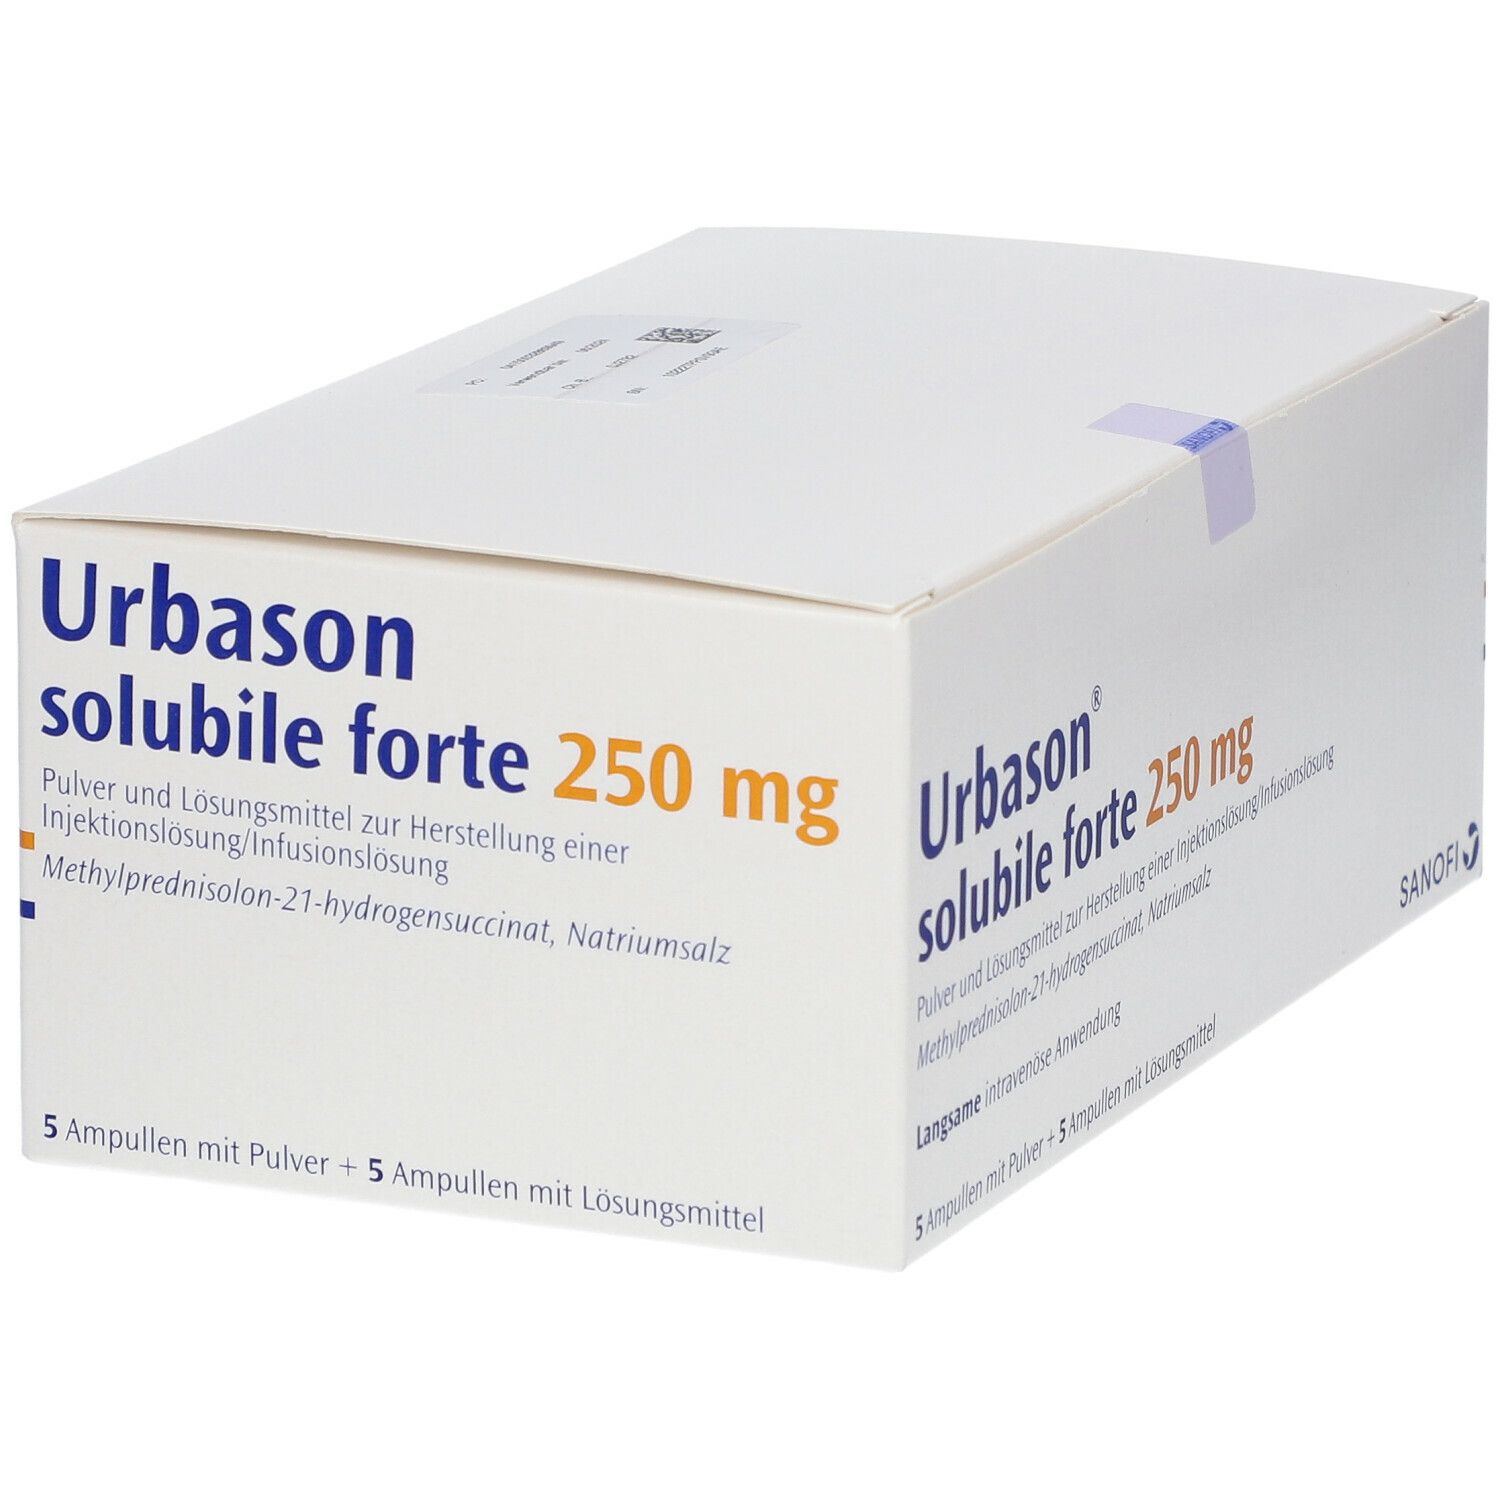 Urbason® solubile forte 250 mg